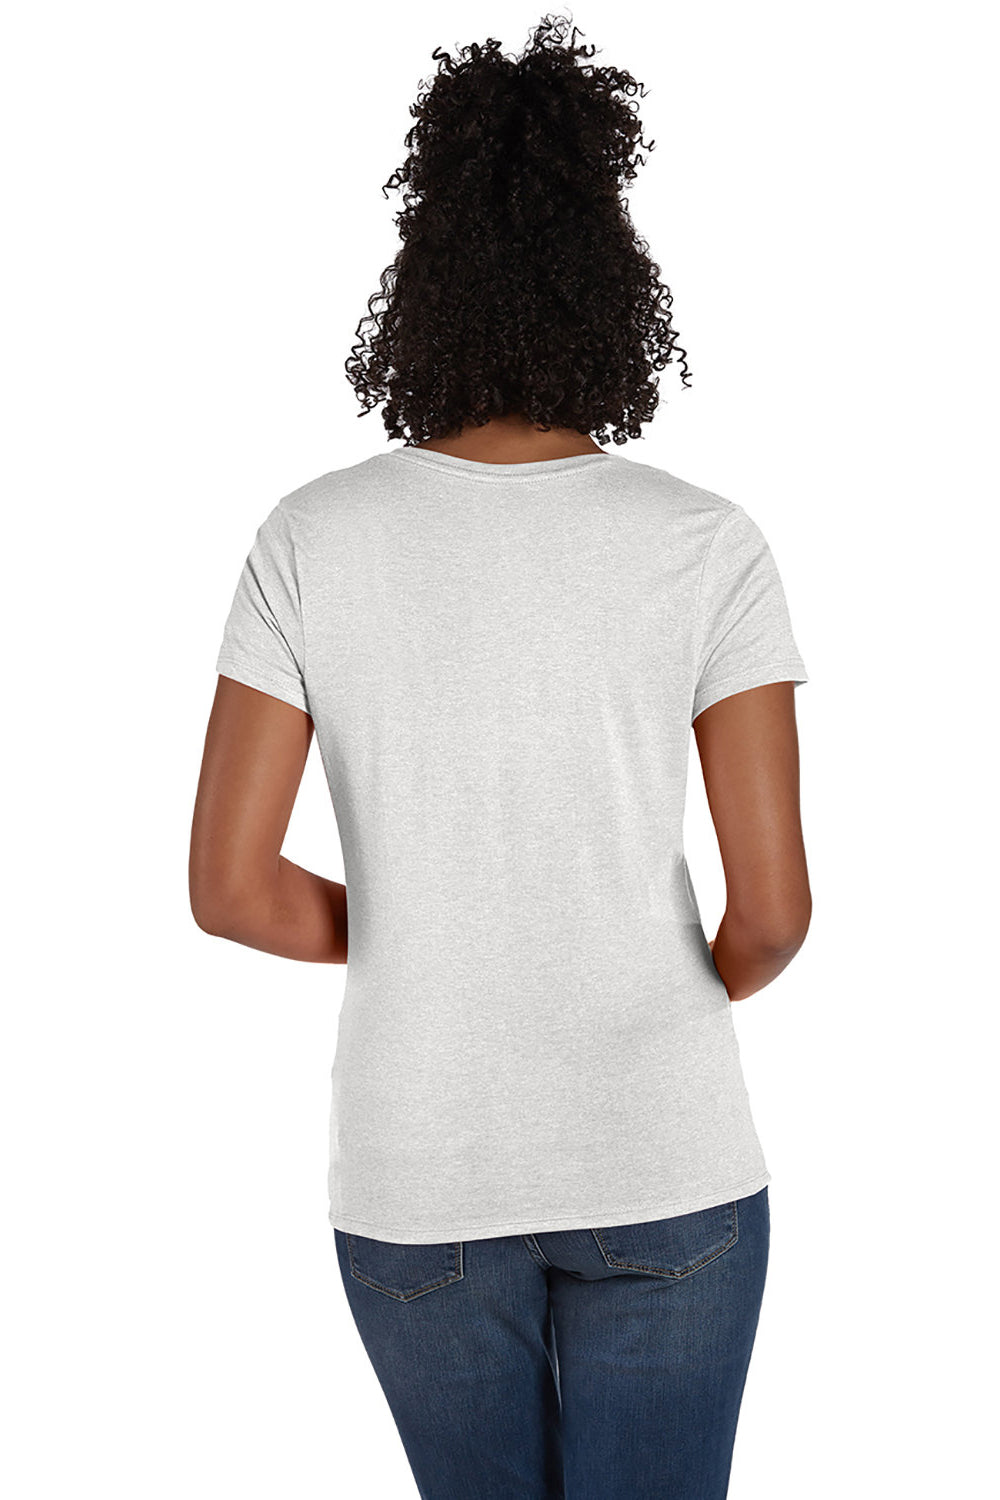 Hanes 42VT Womens X-Temp FreshIQ Moisture Wicking Short Sleeve V-Neck T-Shirt Eco White Back